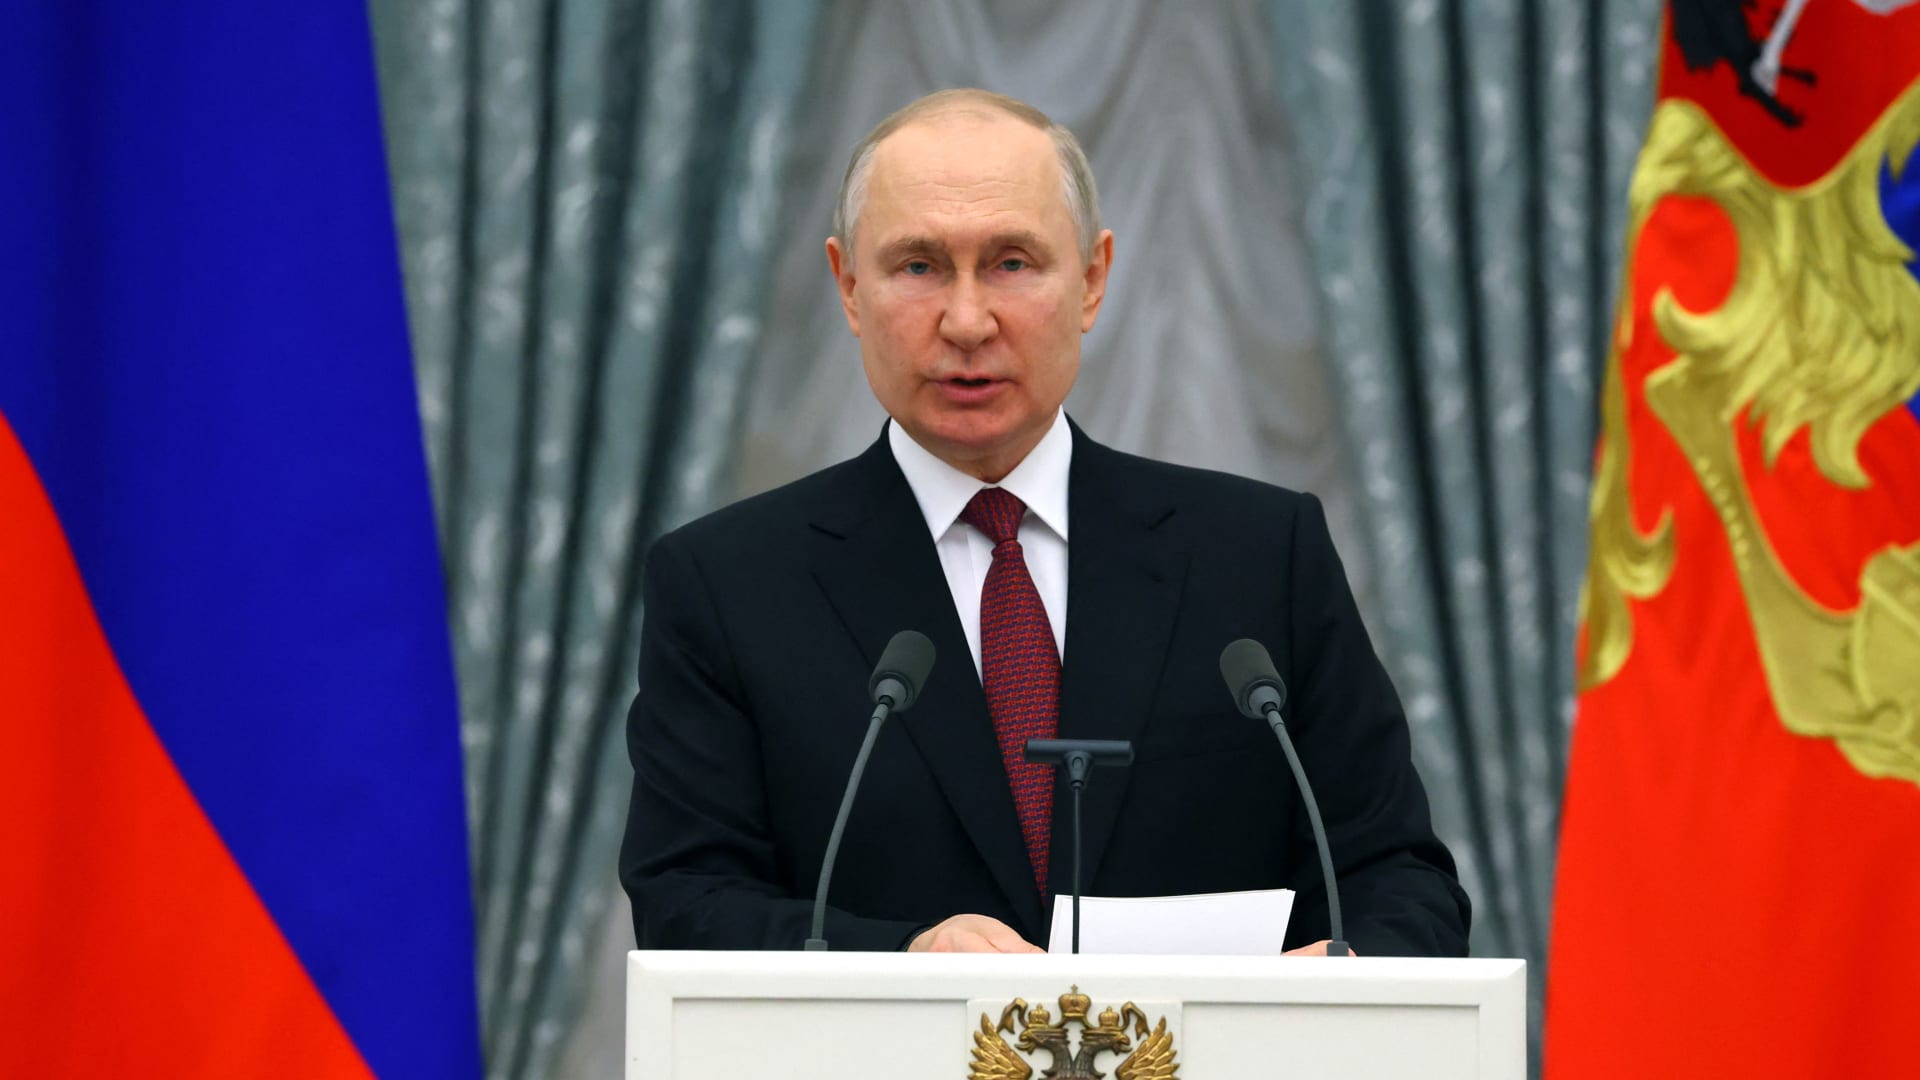 بوتين ينتقد "التدخل الوحشي" لبعض الدول في الشؤون الداخلية للآخرين